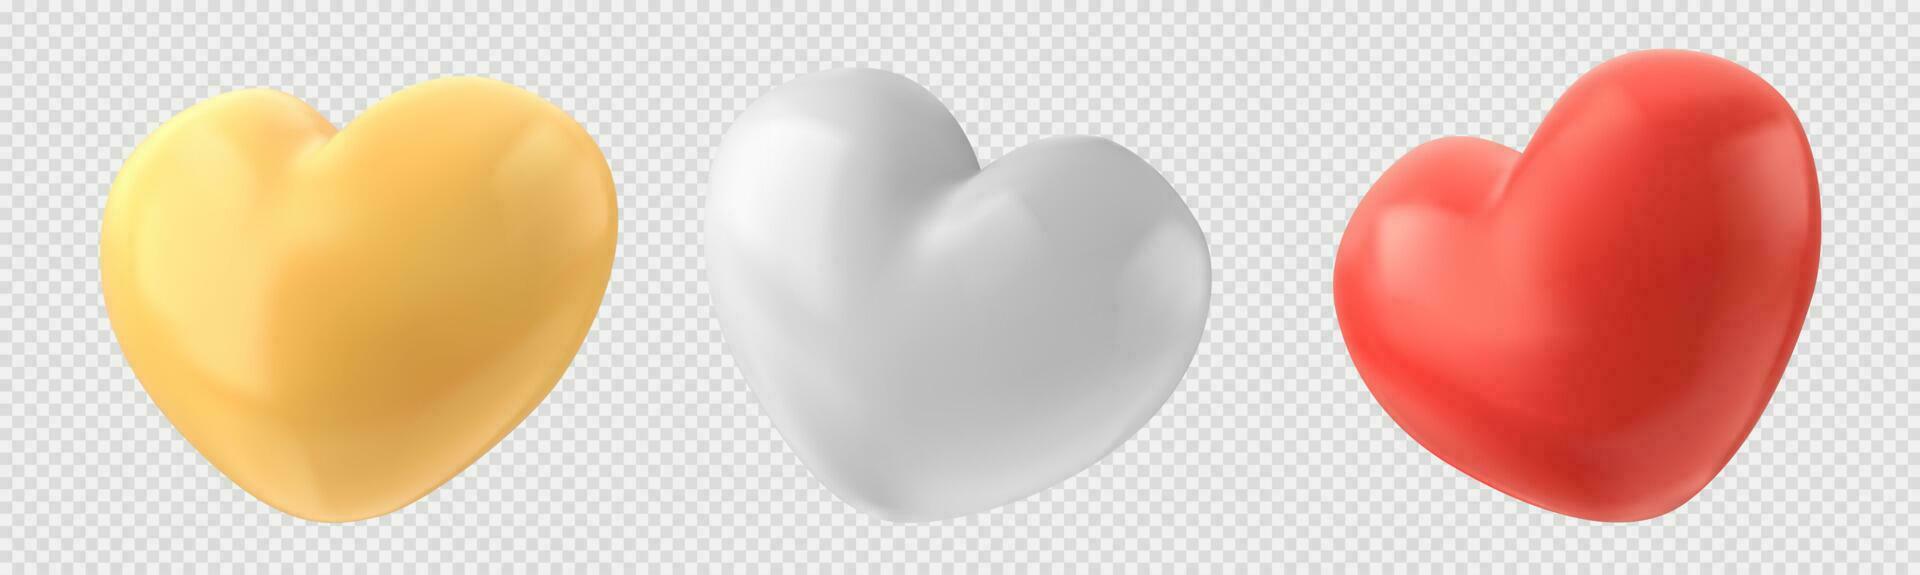 Realistic set of heart shape balloons set vector